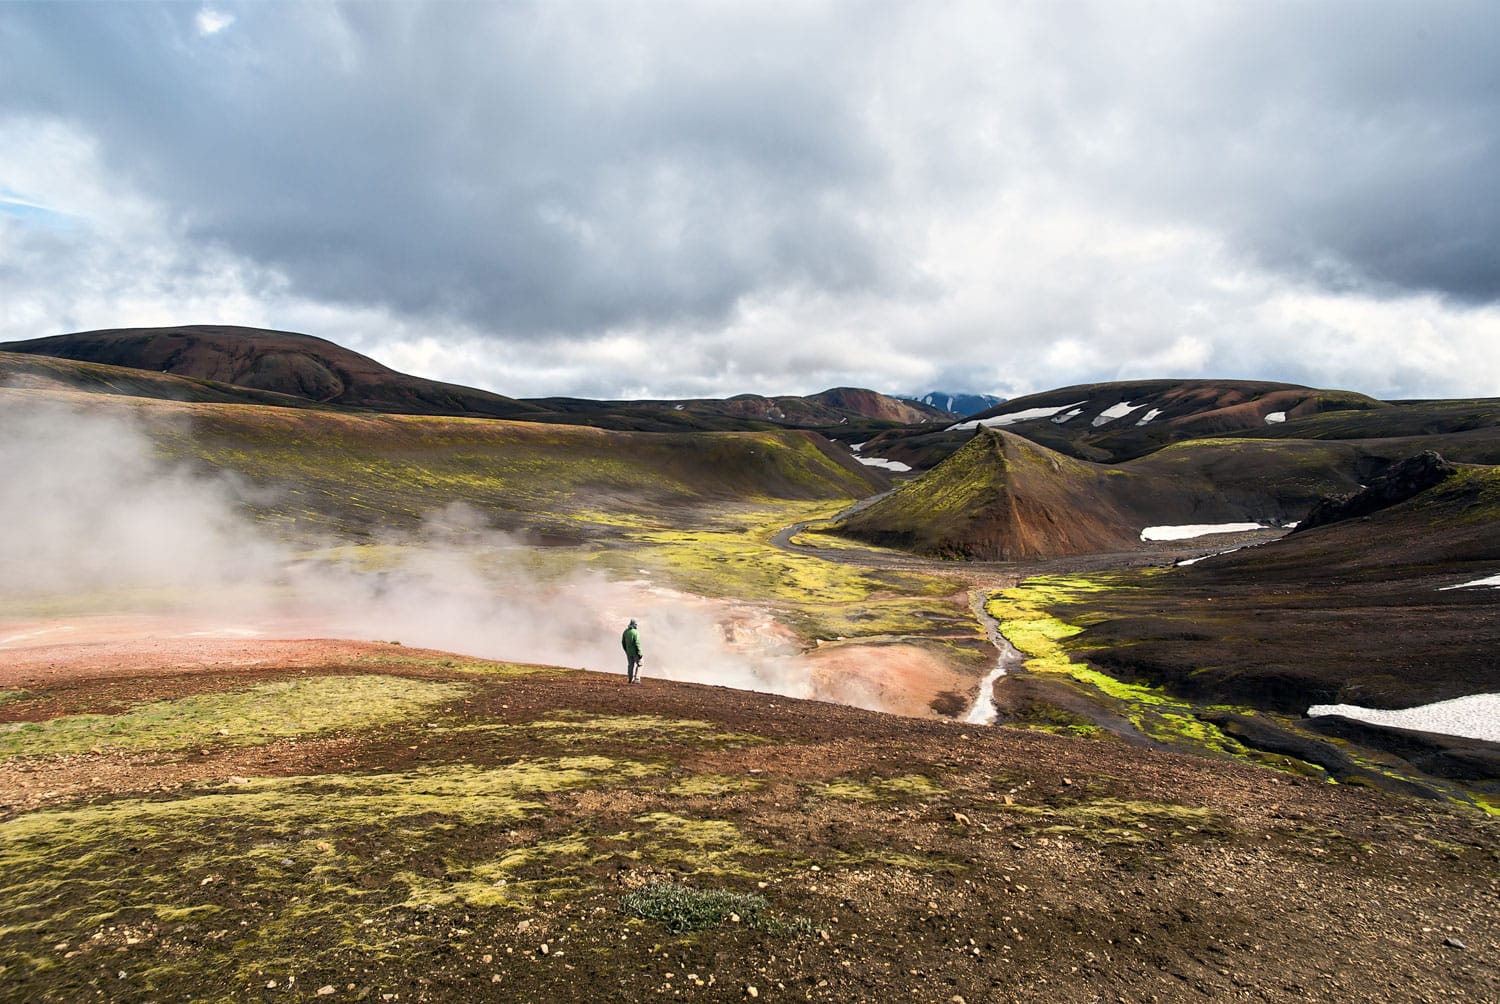 Μονοπάτι πεζοπορίας Landmannalaugar-Thorsmork "Laugavegur"τον Ιούλιο στην Ισλανδία ανάμεσα σε βουνά και ηφαιστειακή τέφρα με σύννεφα ατμού